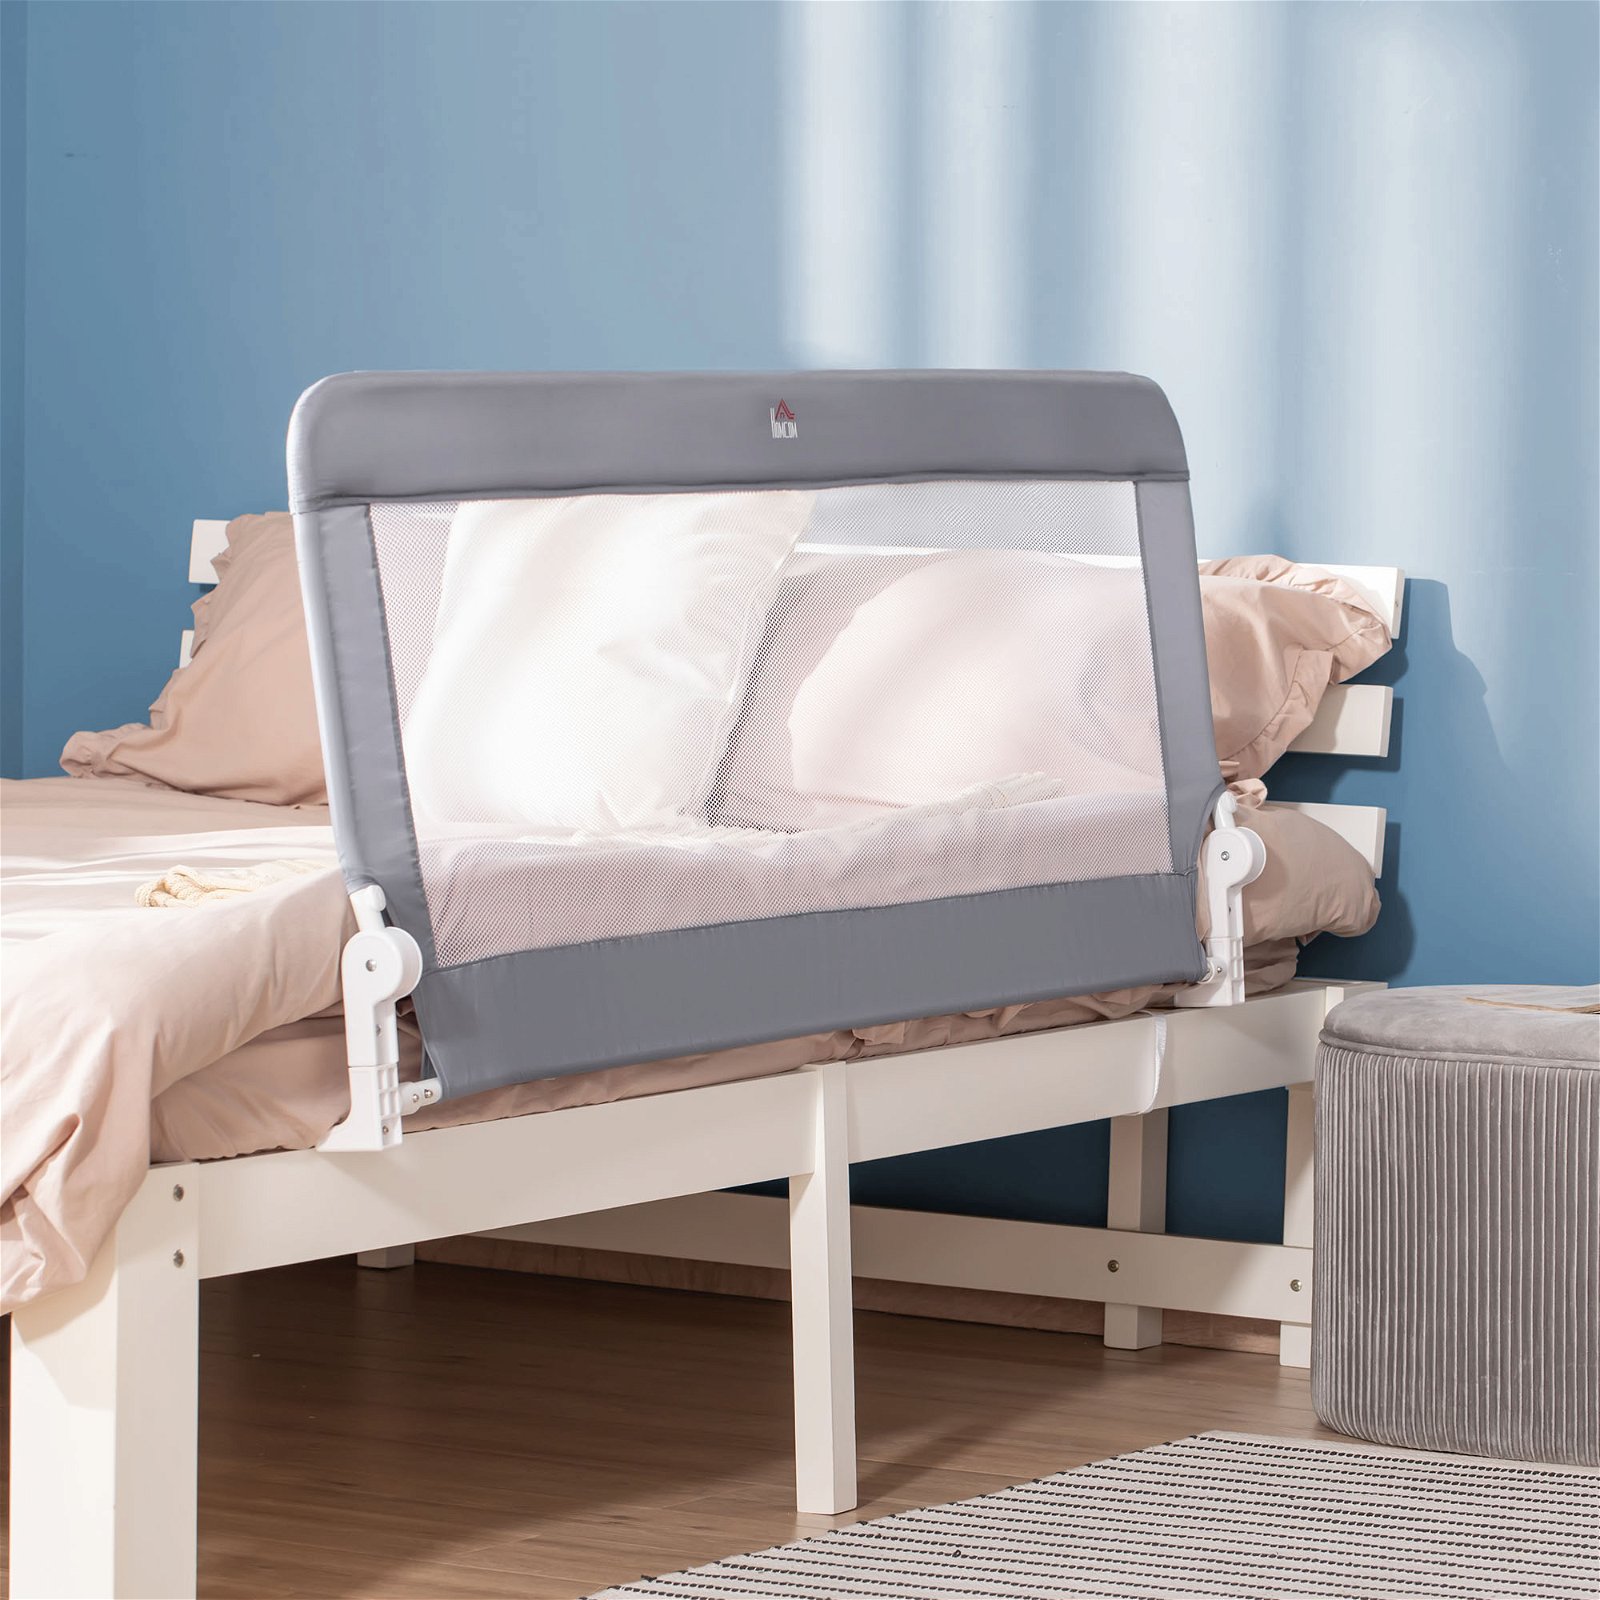 Cama com apoios de cabeça ajustáveis e prática cama de casal